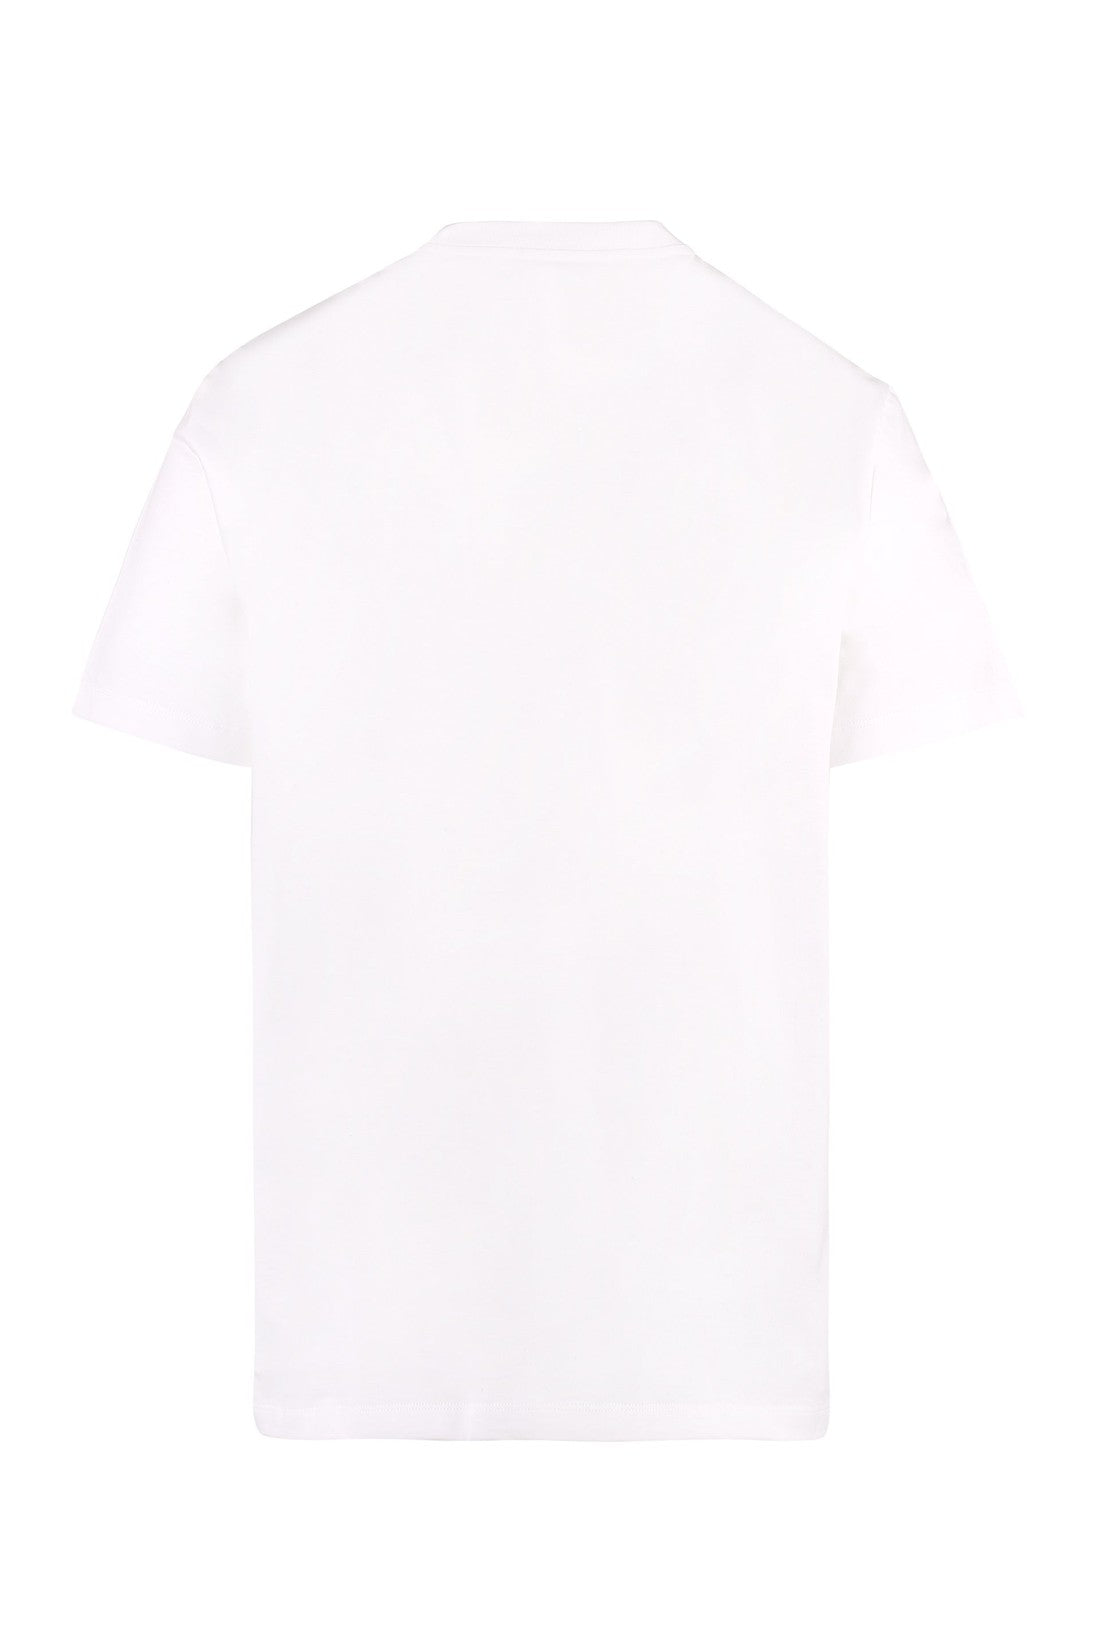 Versace-OUTLET-SALE-Logo embroidery cotton t-shirt-ARCHIVIST